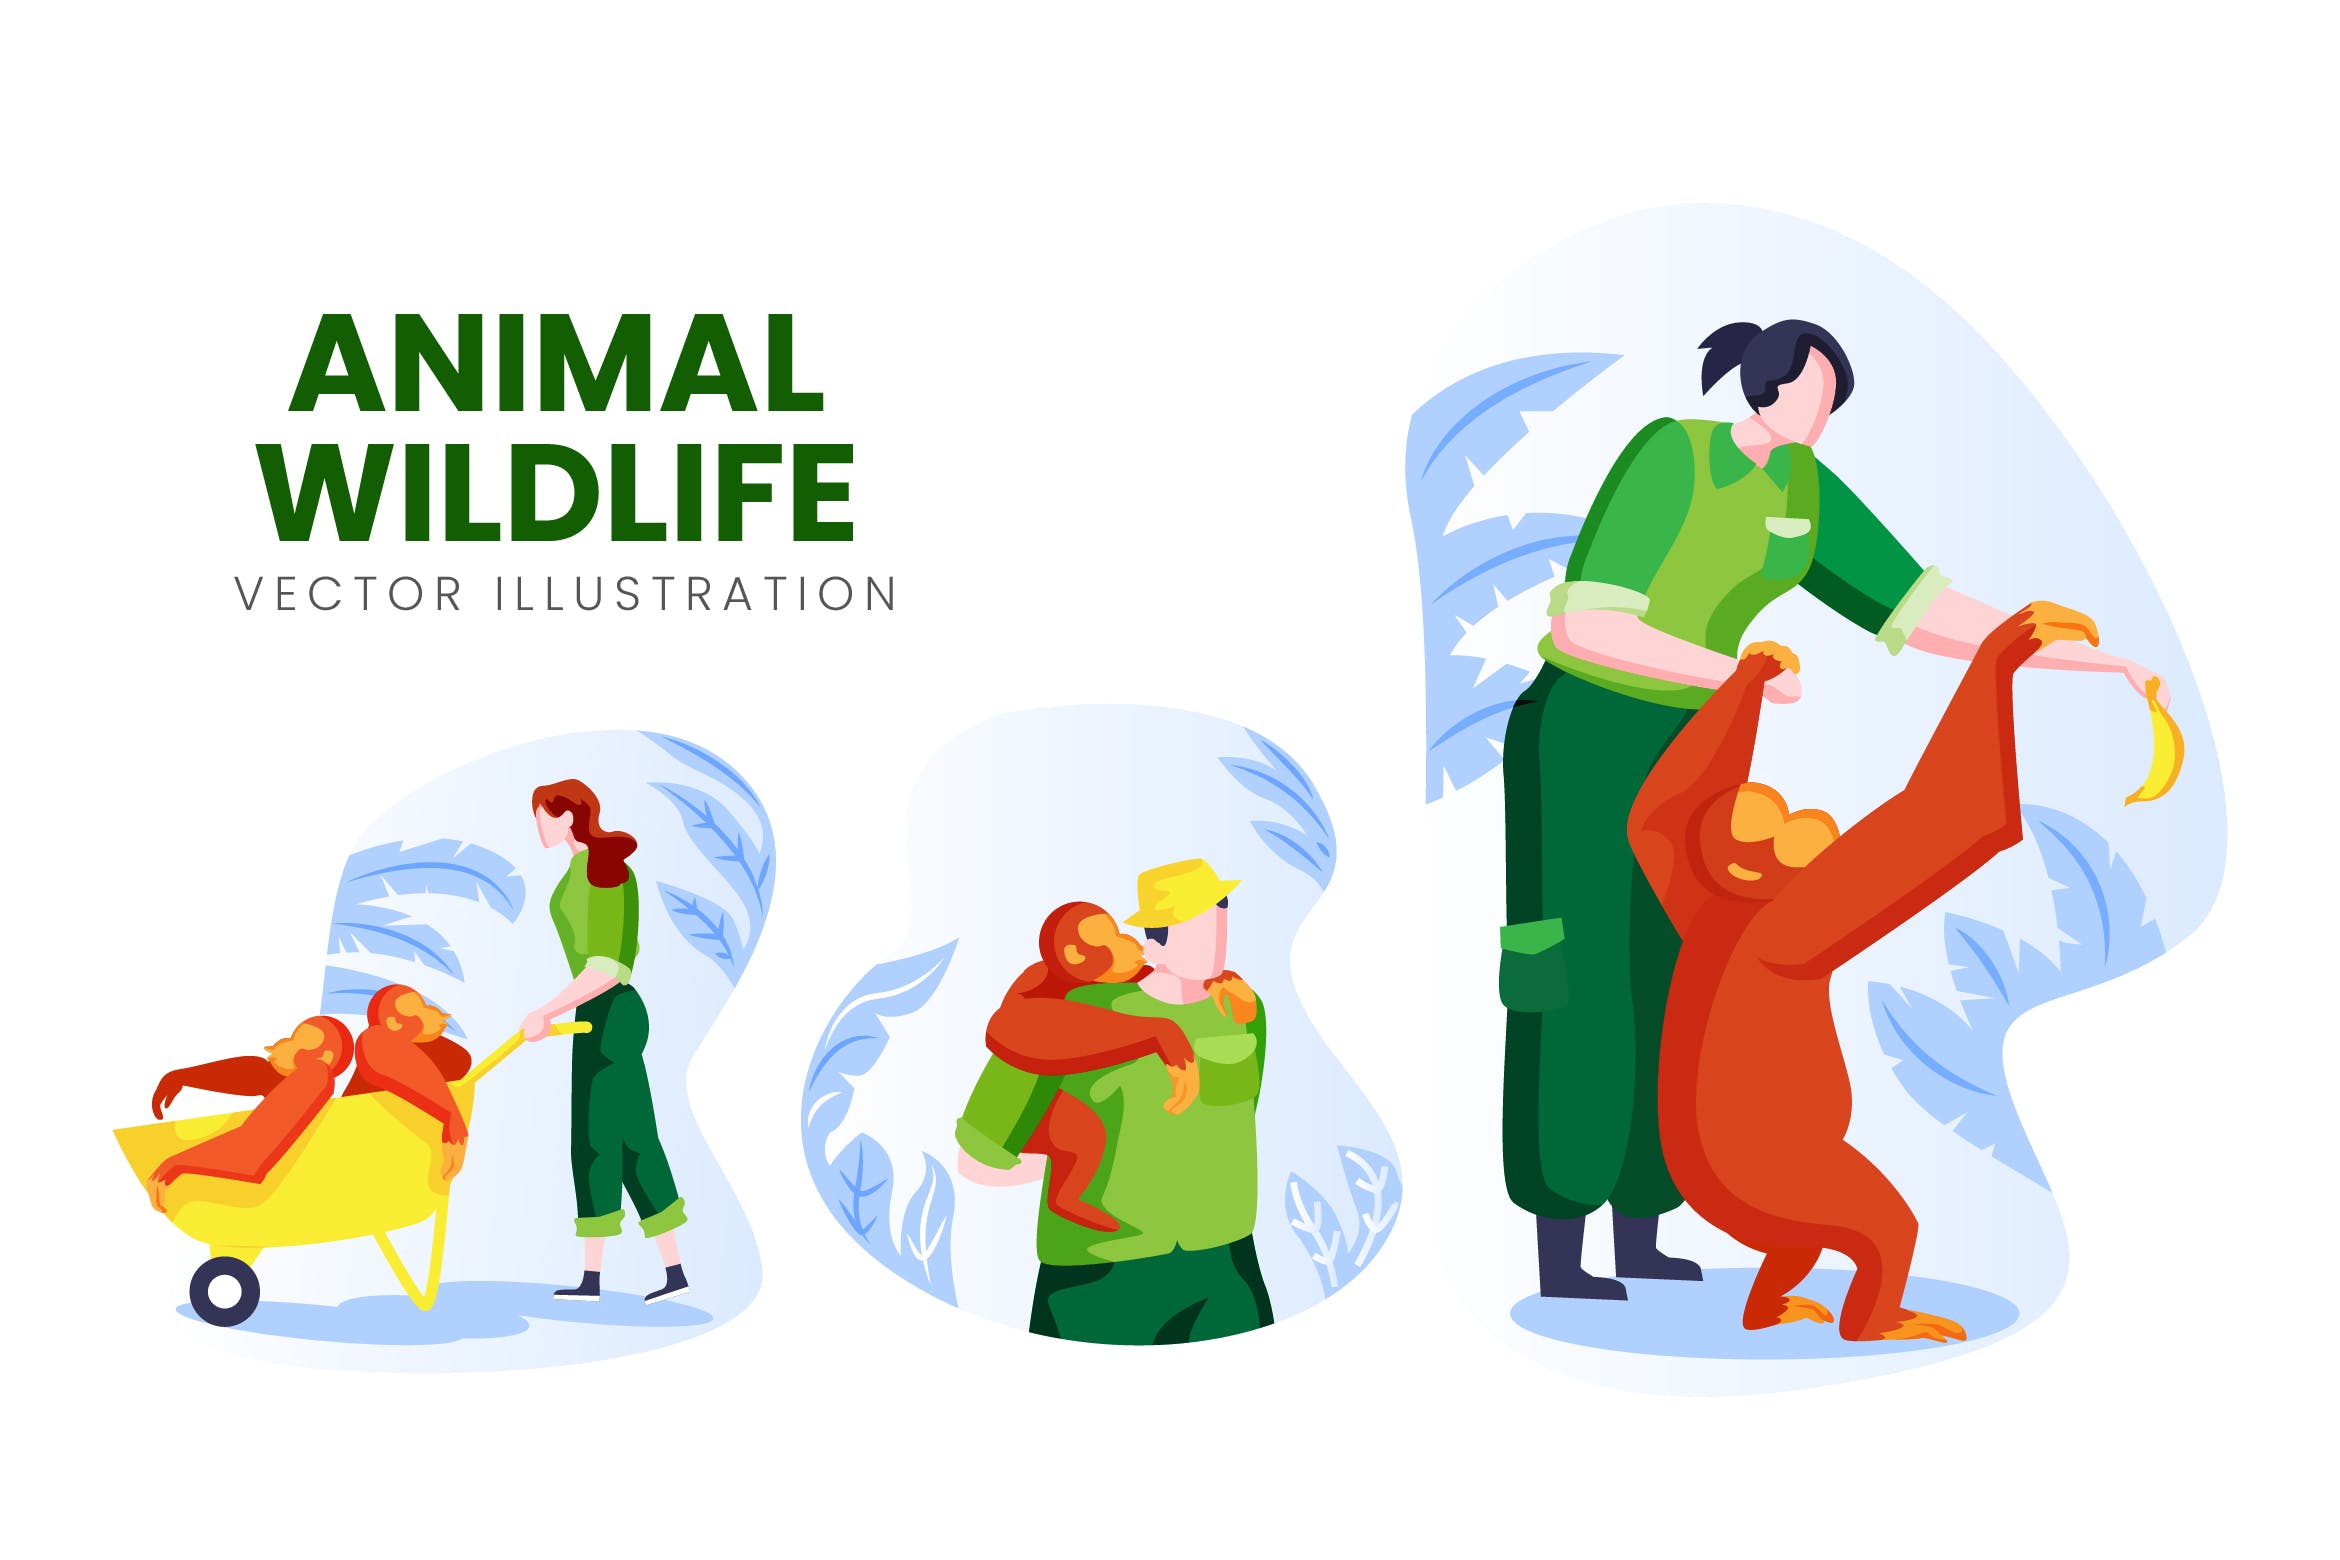 野生动物保育员人物形象非凡图库精选手绘插画矢量素材 Animal Wildlife Vector Character Set插图